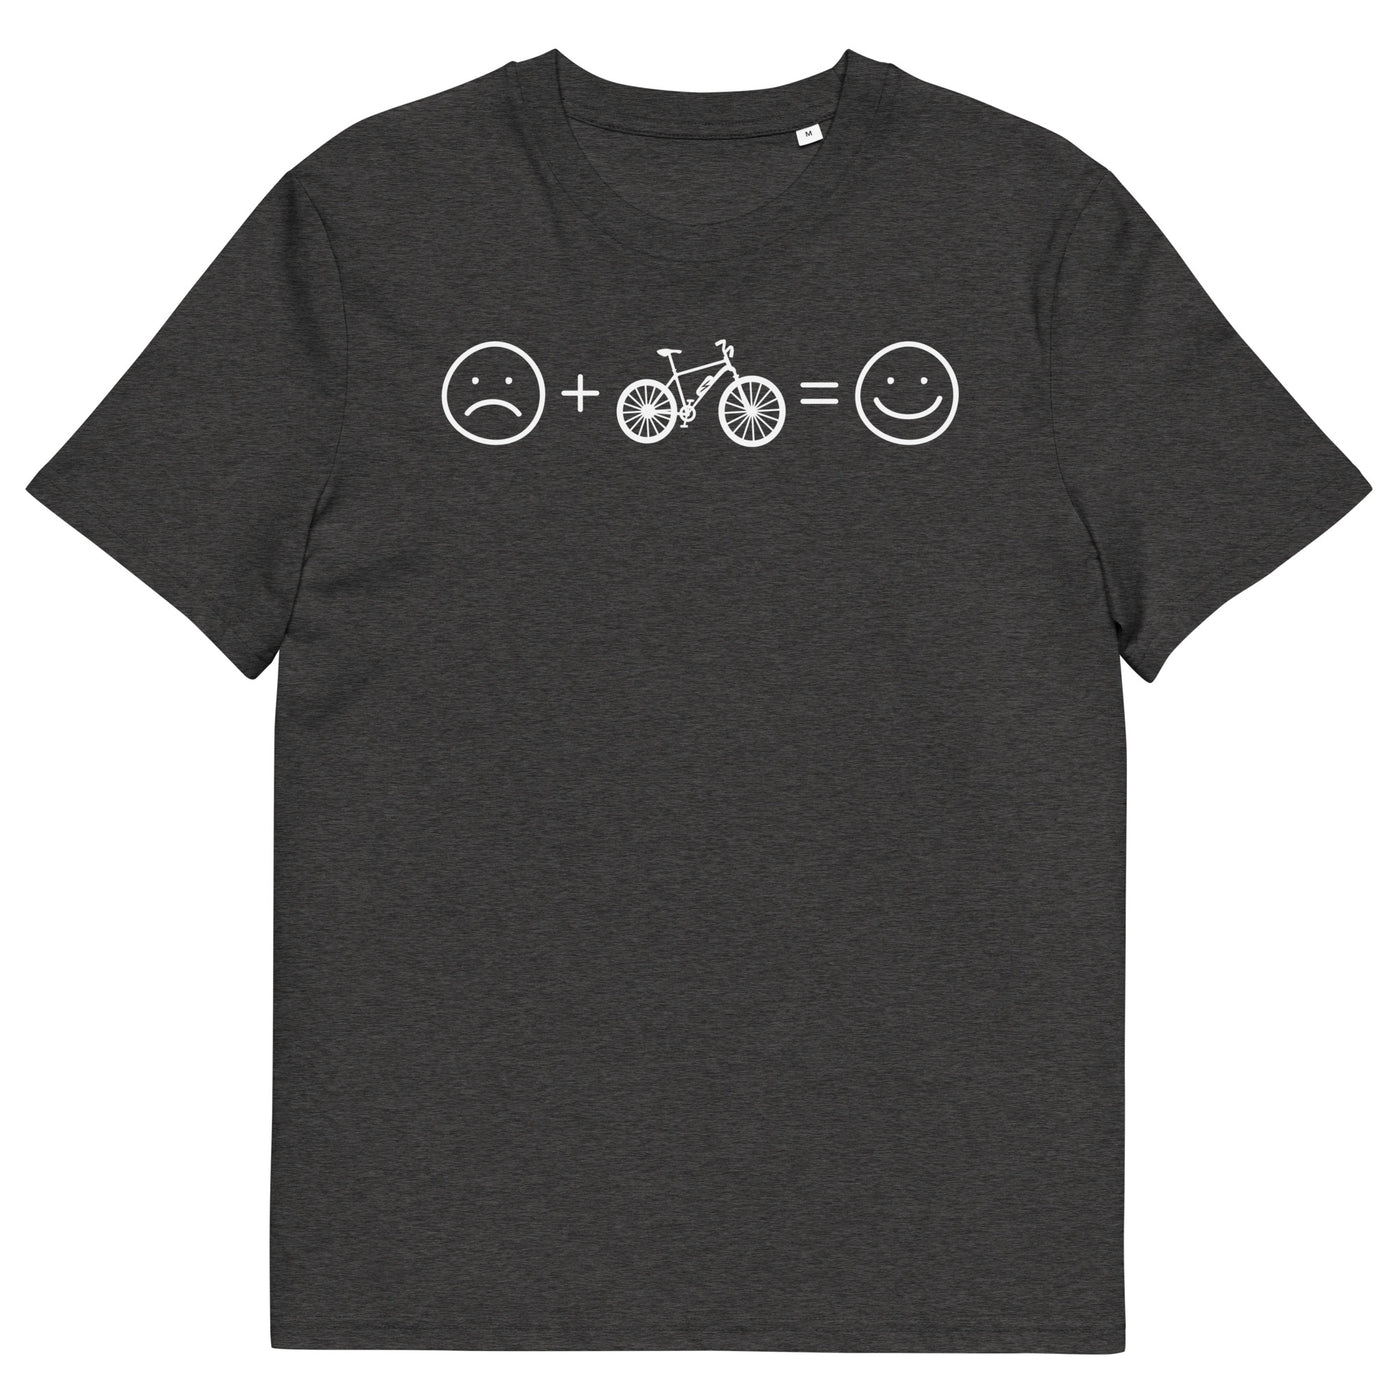 Lächelndes Gesicht und Ebike - Herren Premium Organic T-Shirt e-bike xxx yyy zzz Dark Heather Grey